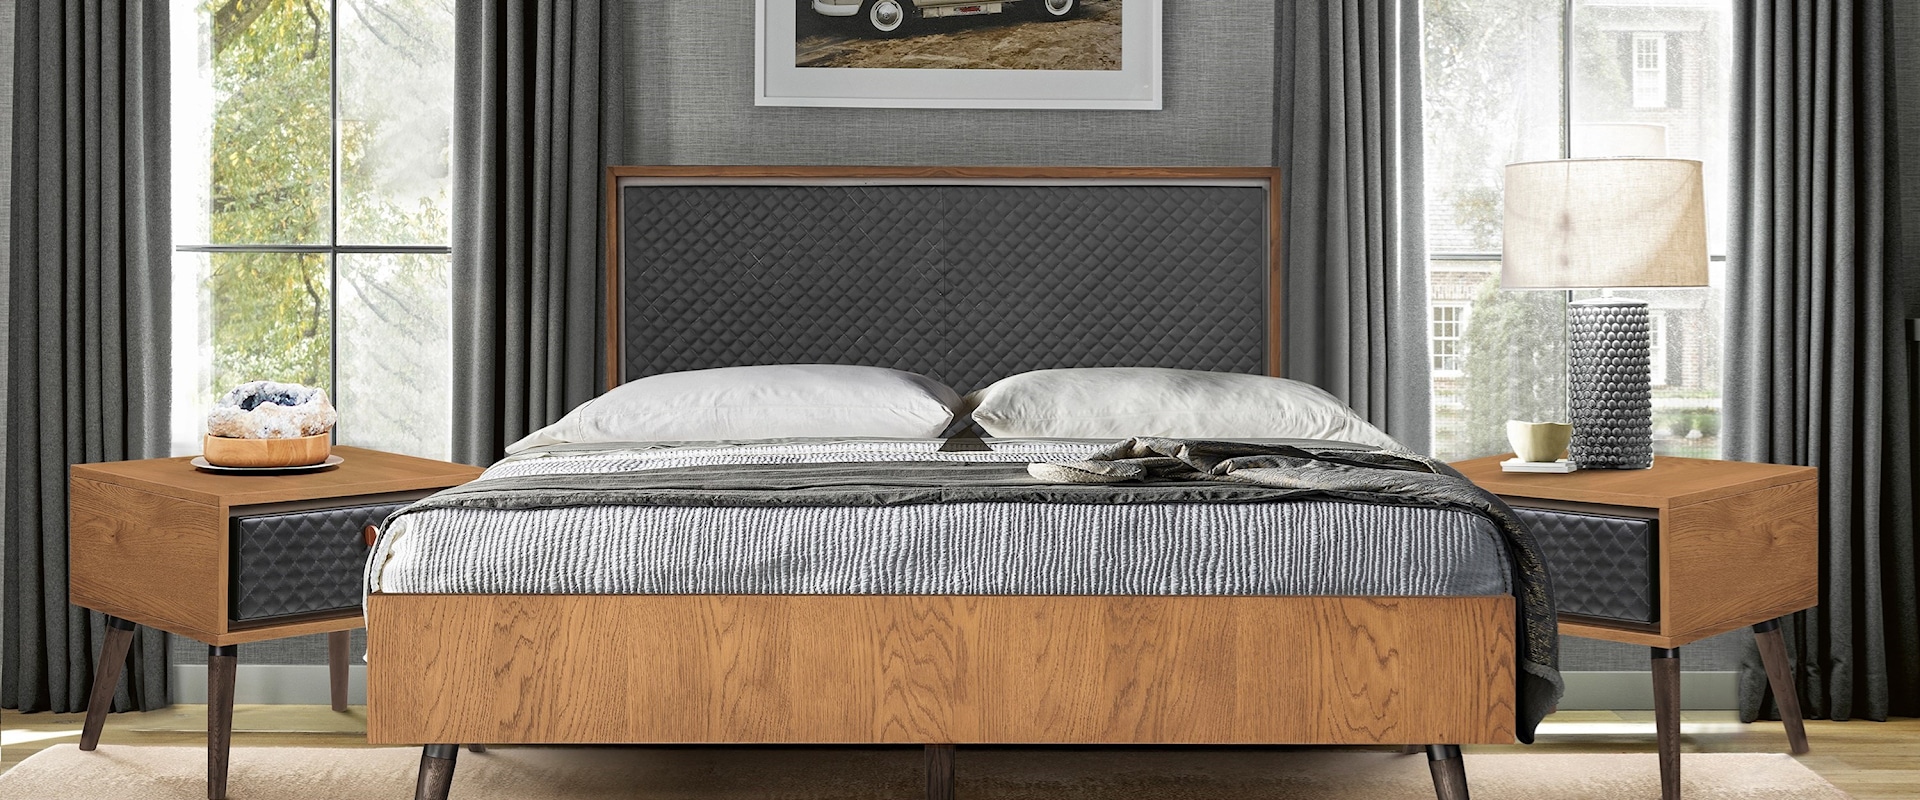 Rustic 3-Piece Upholstered Platform Bedroom set in Queen with 2 Nightstands